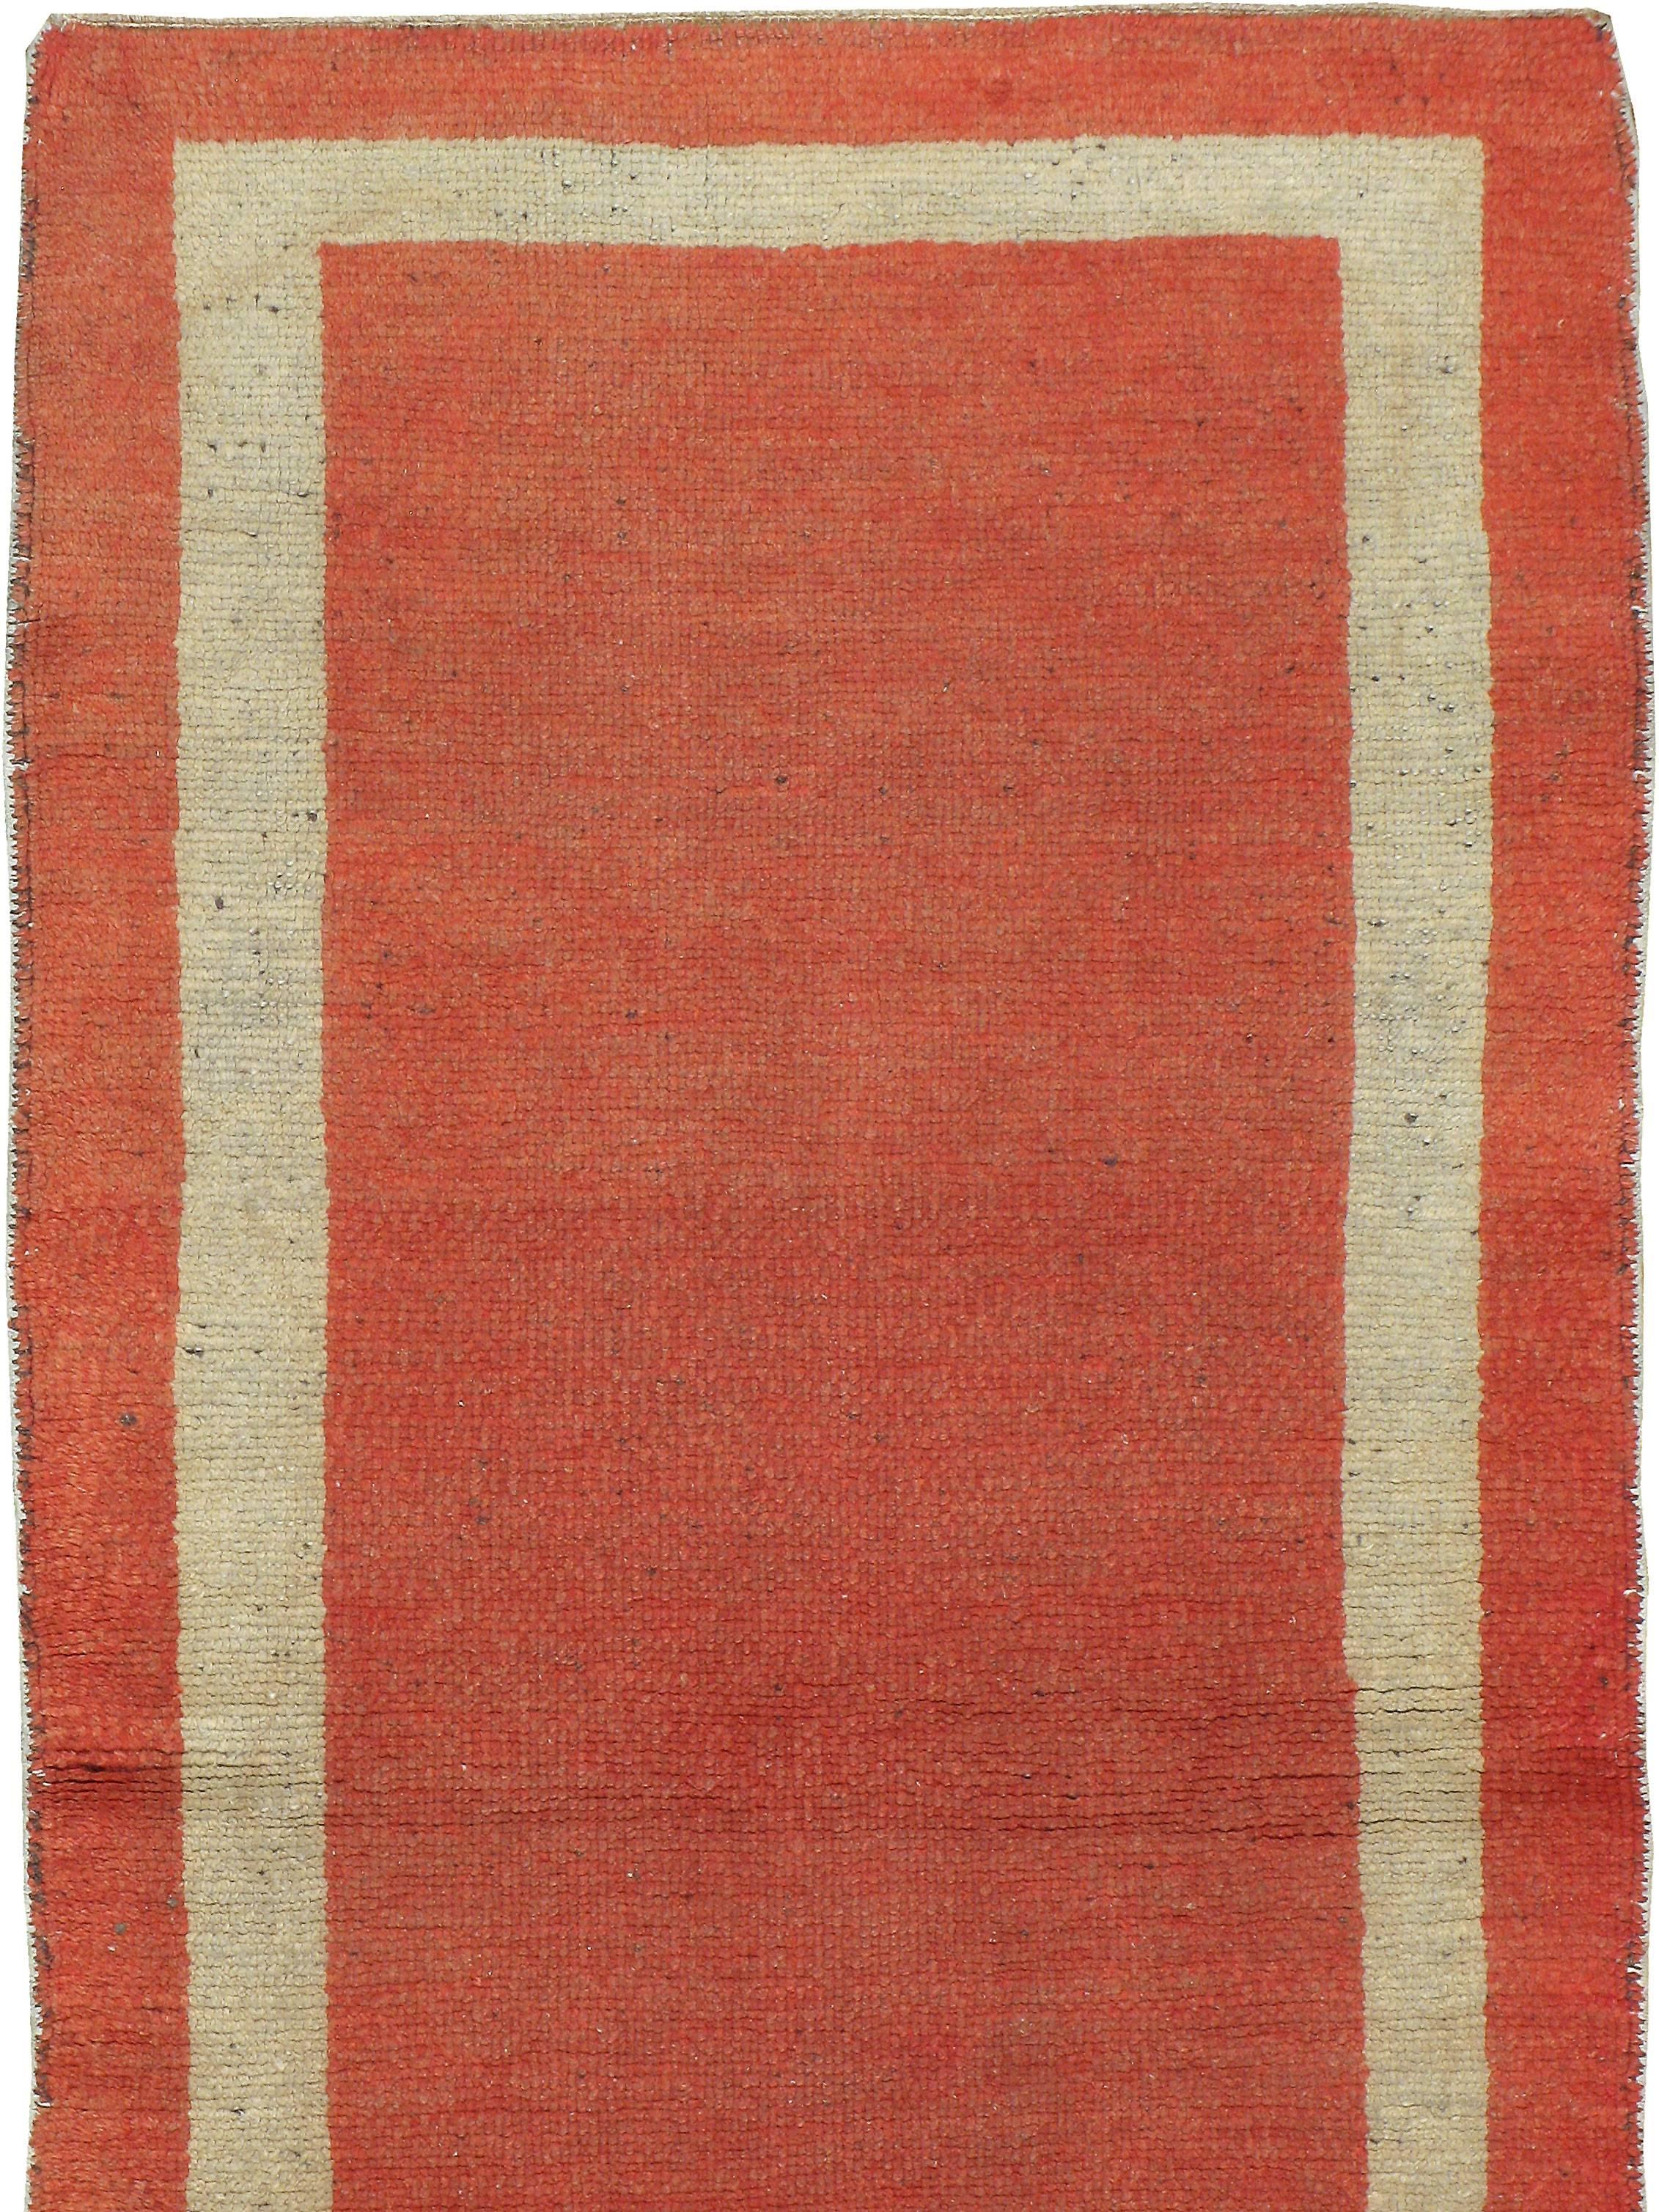 Ein alter türkischer Oushak-Teppich aus dem zweiten Viertel des 20. Jahrhunderts mit einem minimalistischen, einfarbig orangefarbenen Grund, der von einer einzigen Bordüre umgeben ist.